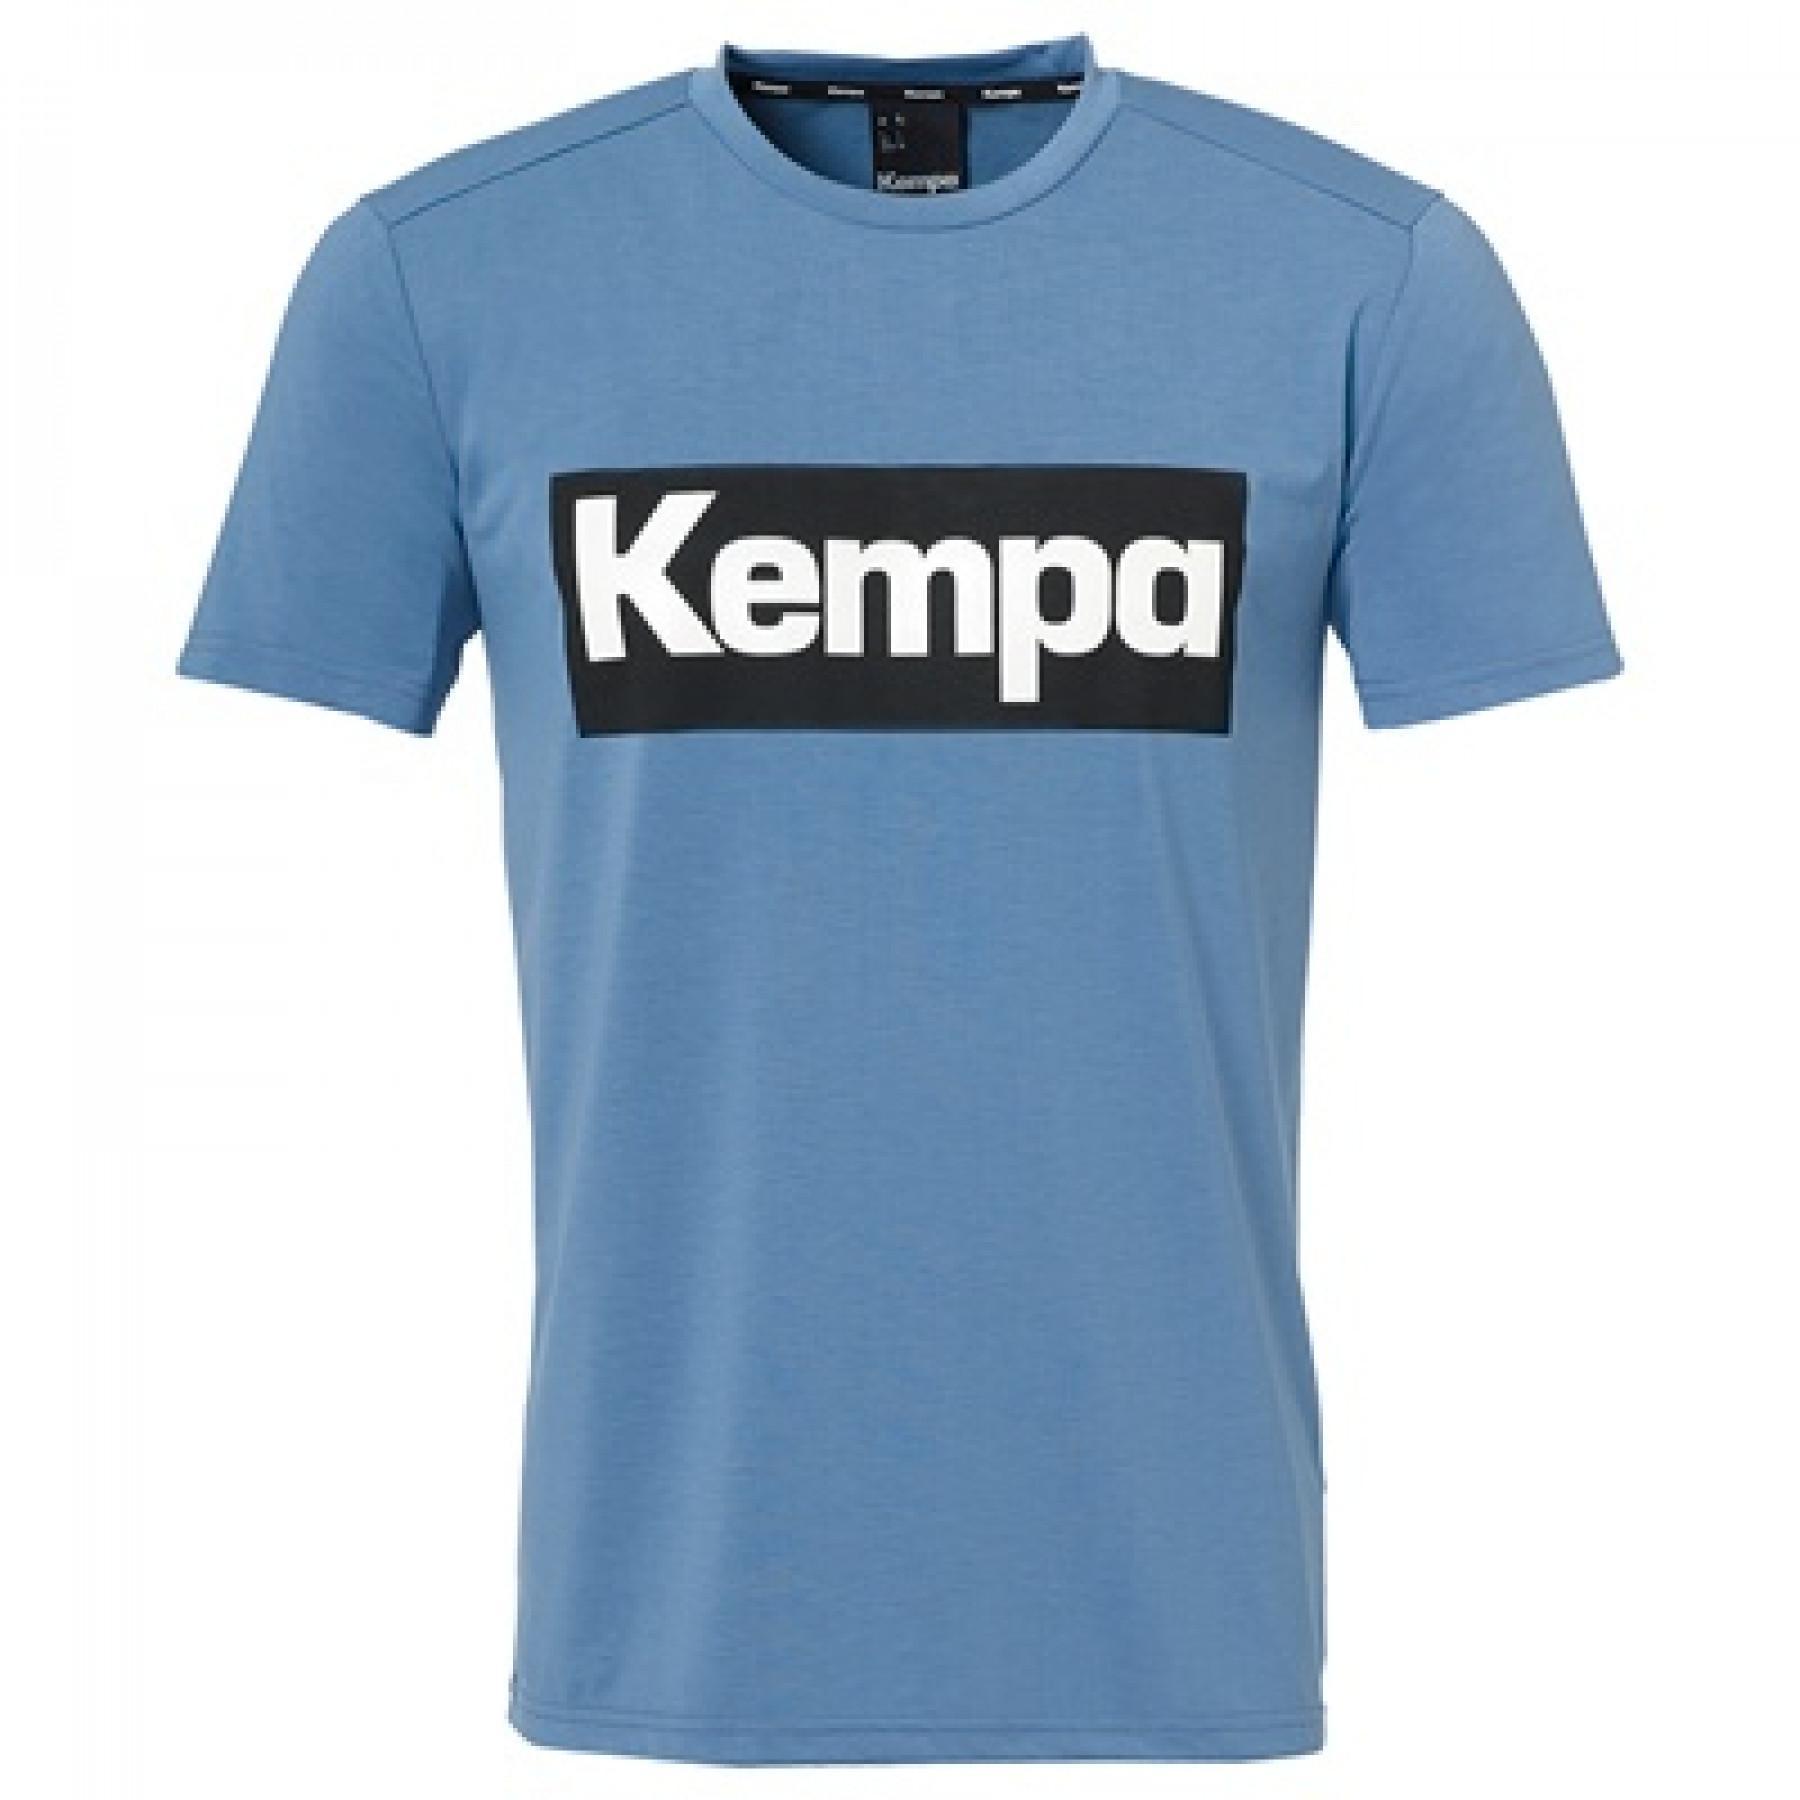 T-shirt Kempa Laganda